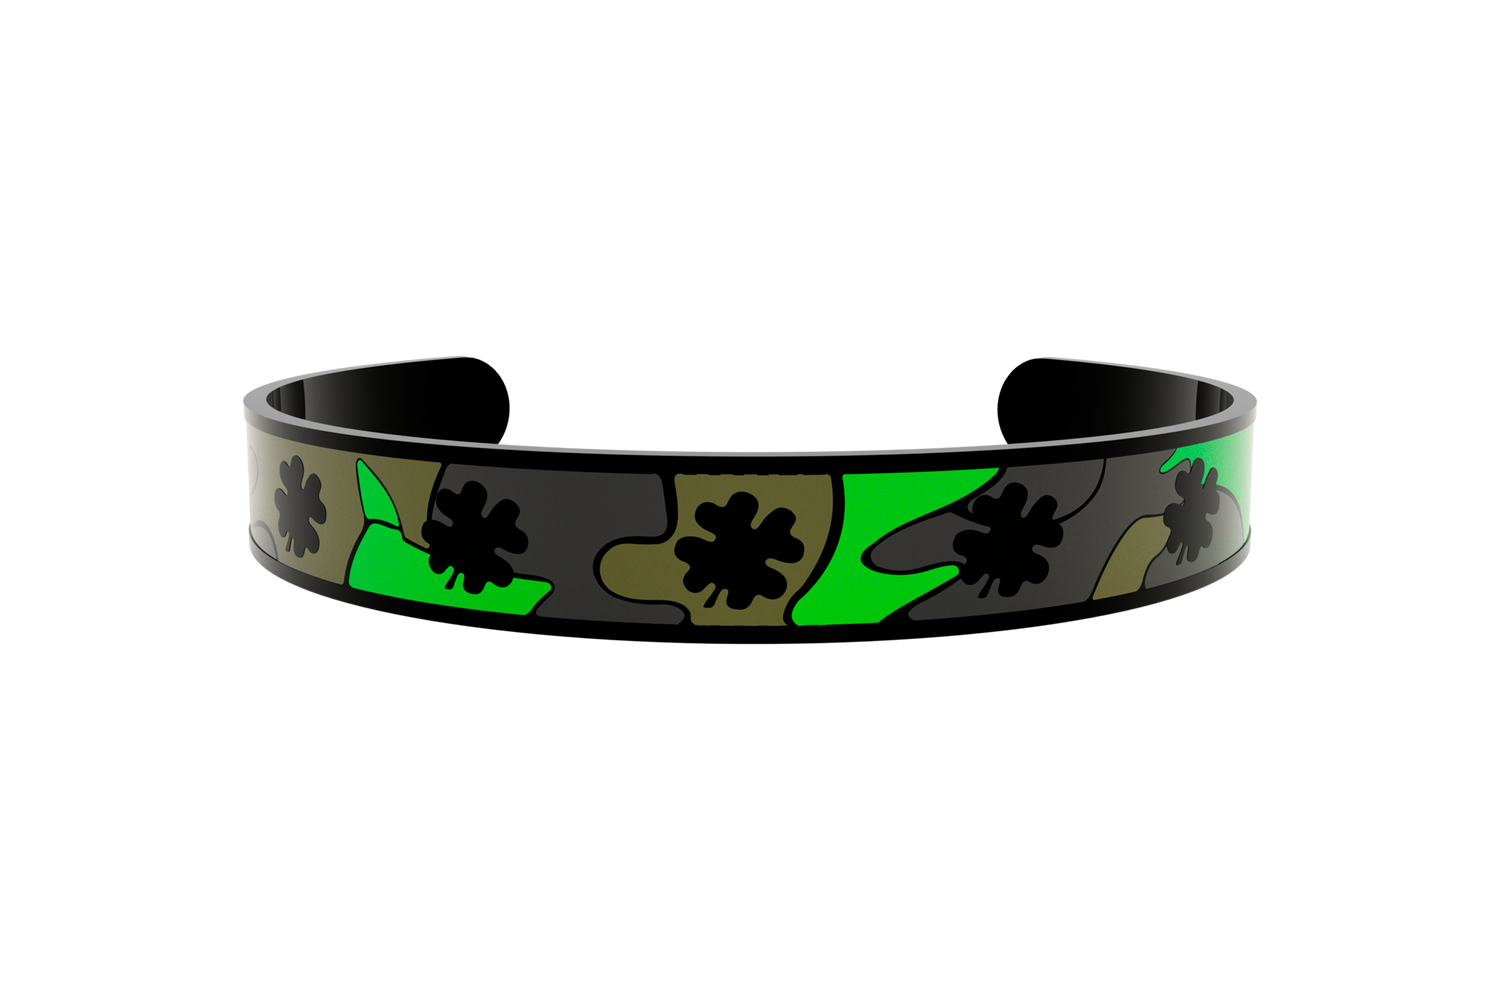 Bracelet clover 4 leaf camouflage black plated – Fortune Hands